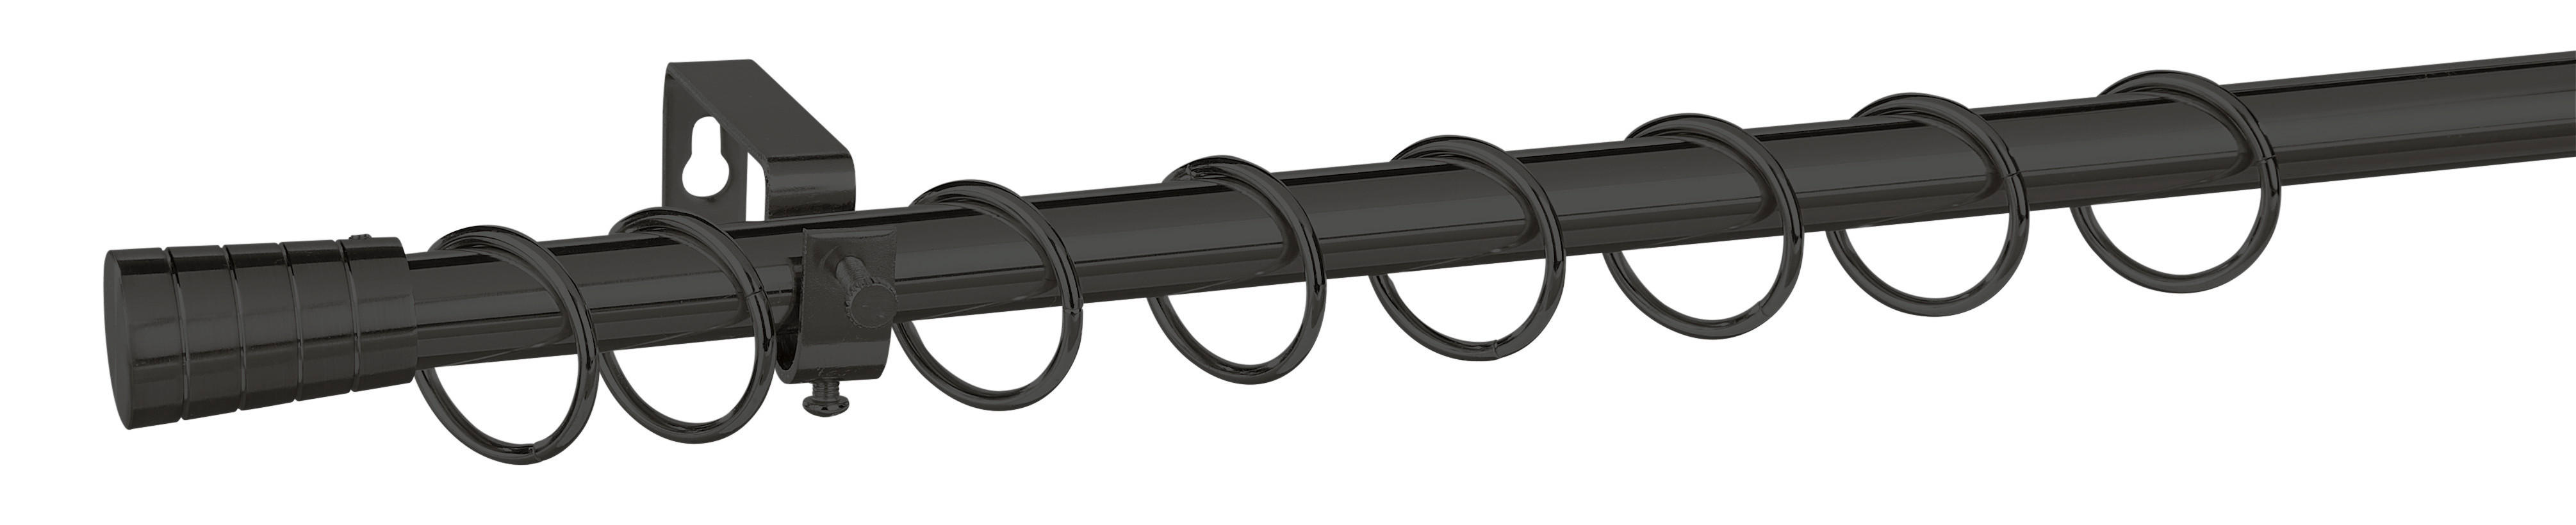 Stilgarnituren Kappe schwarz Metall D: ca. 1,9 cm ausziehbar von ca. 130 bis 240 cm 1.0 Läufe